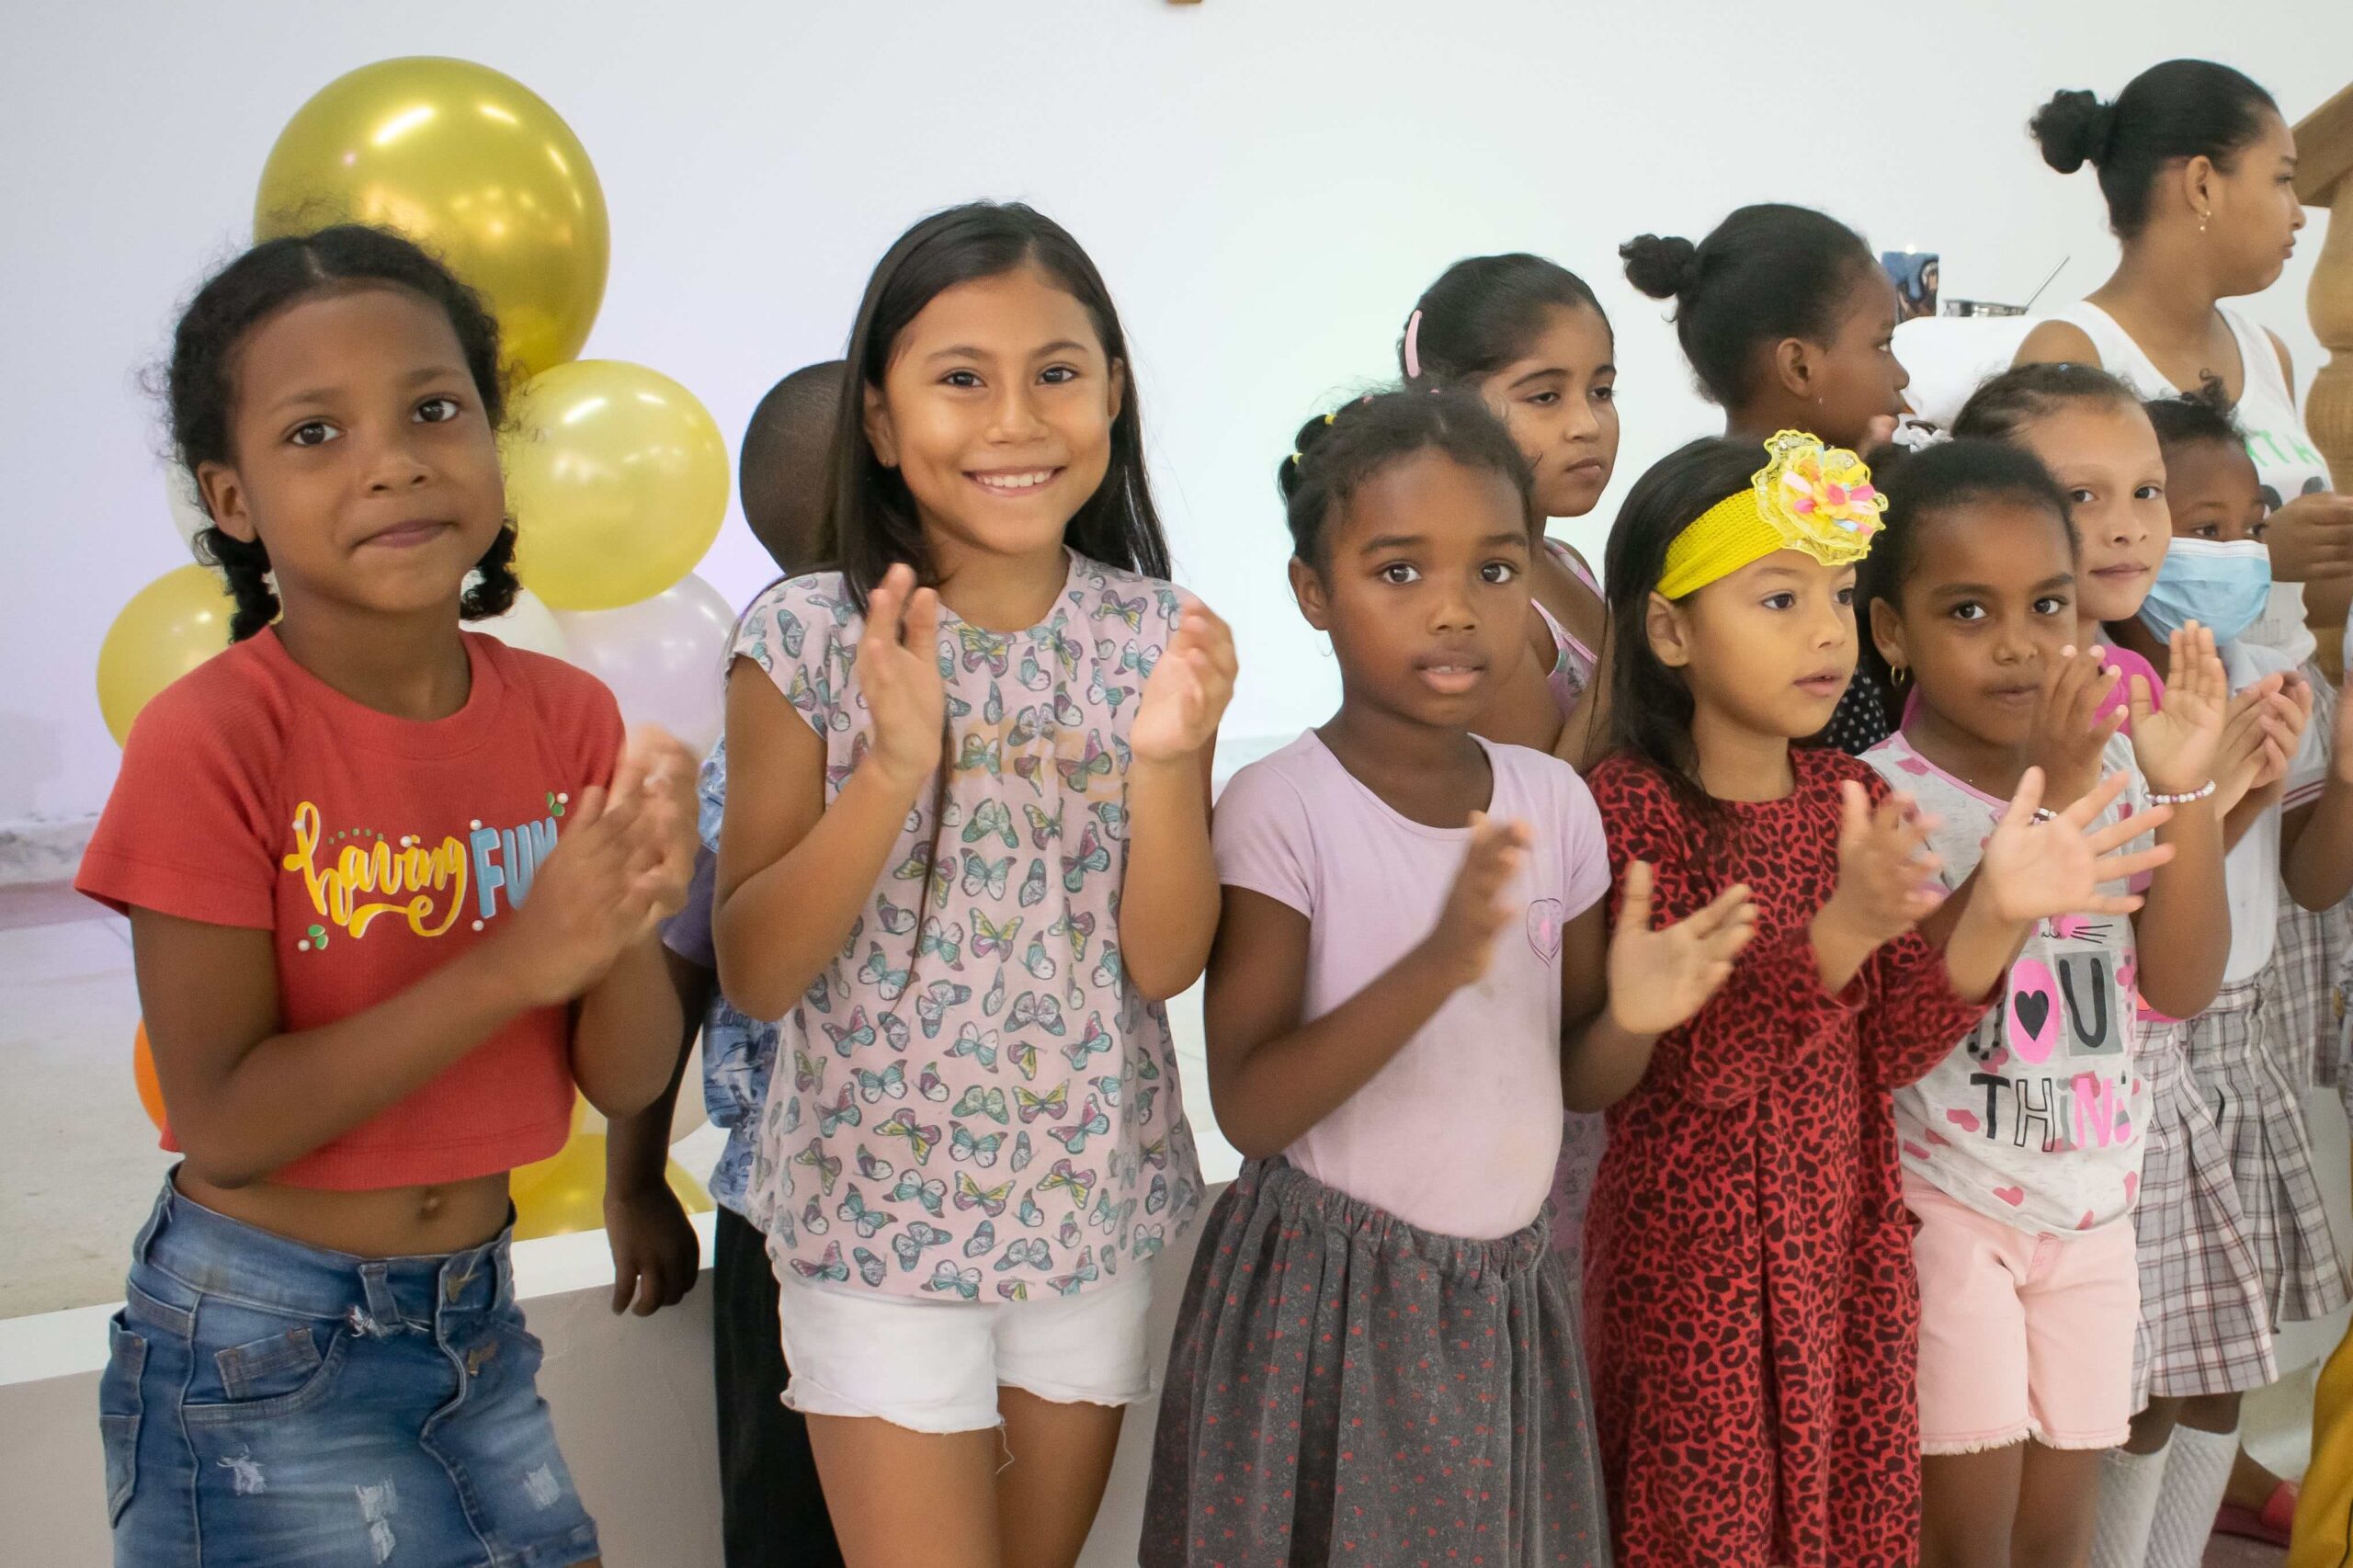 Projet social: Rénovation de la salle paroissiale San José de Leonessa à Carthagène des Indes (Colombie)